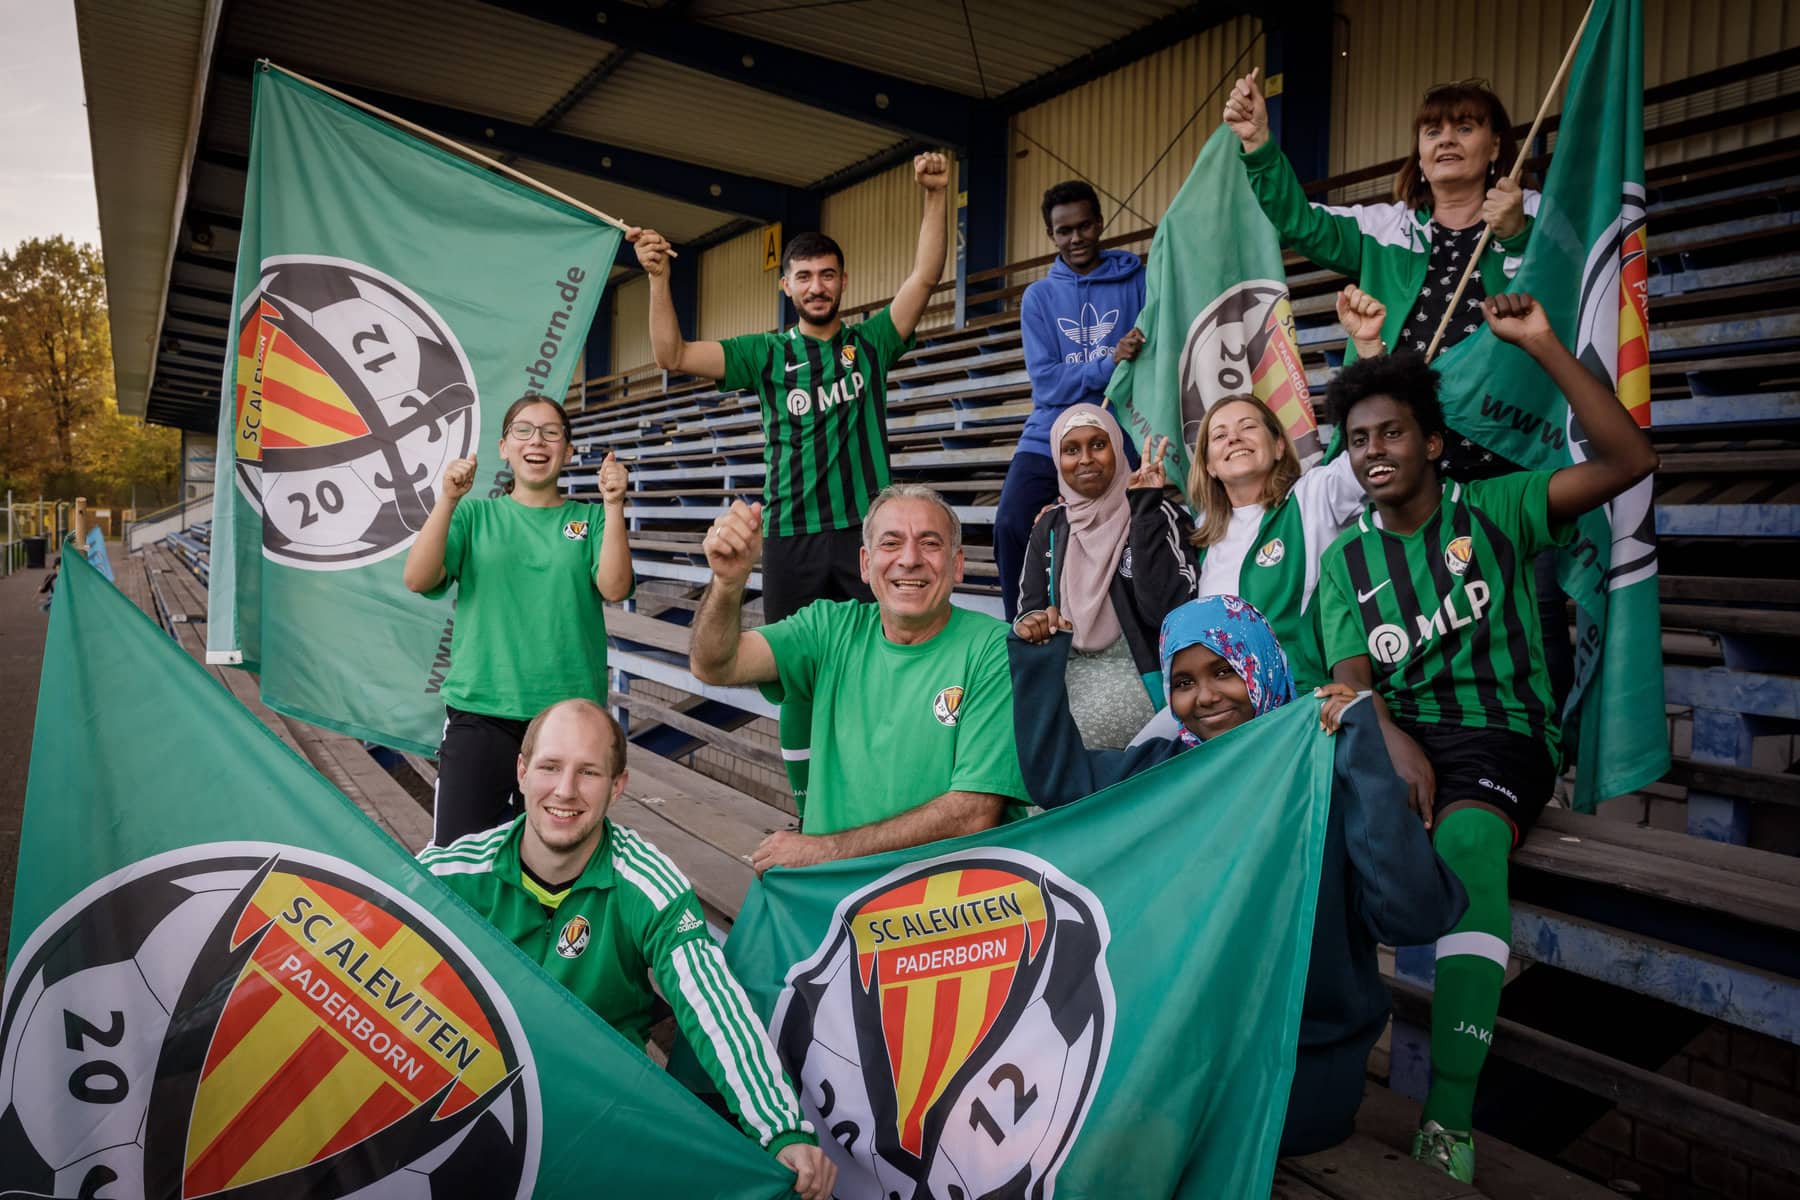 Fußball für Integration: SC Aleviten Paderborn schafft Verständnis und Zusammenhalt